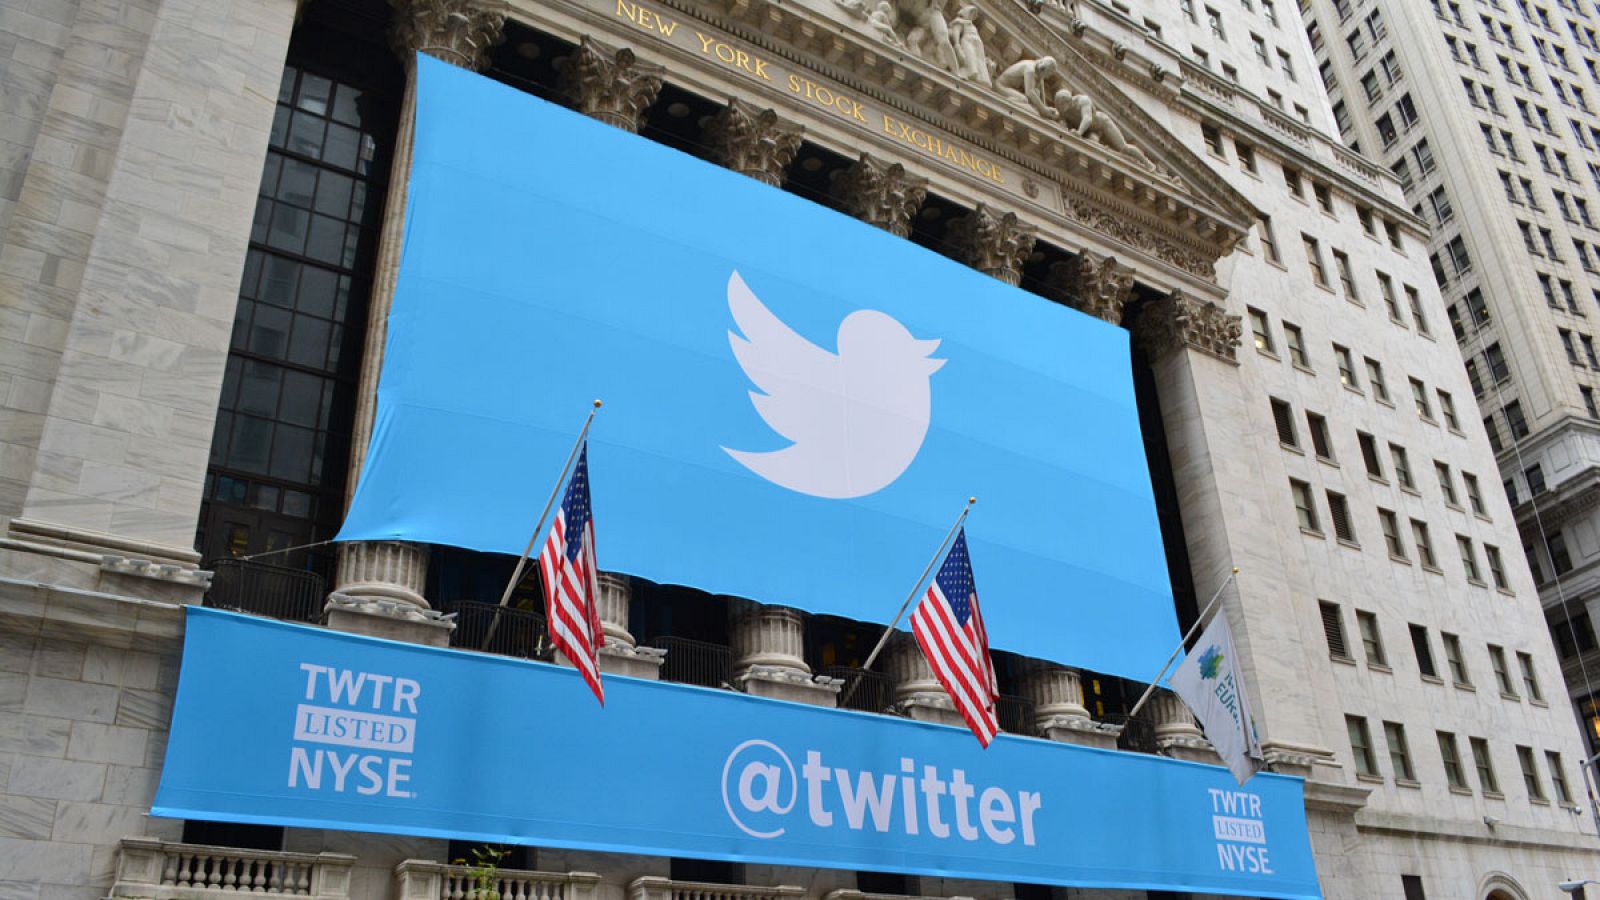 Una gran lona azul anuncia Twitter en la fachada de la Bolsa de Nueva York. Imagen de 2013.